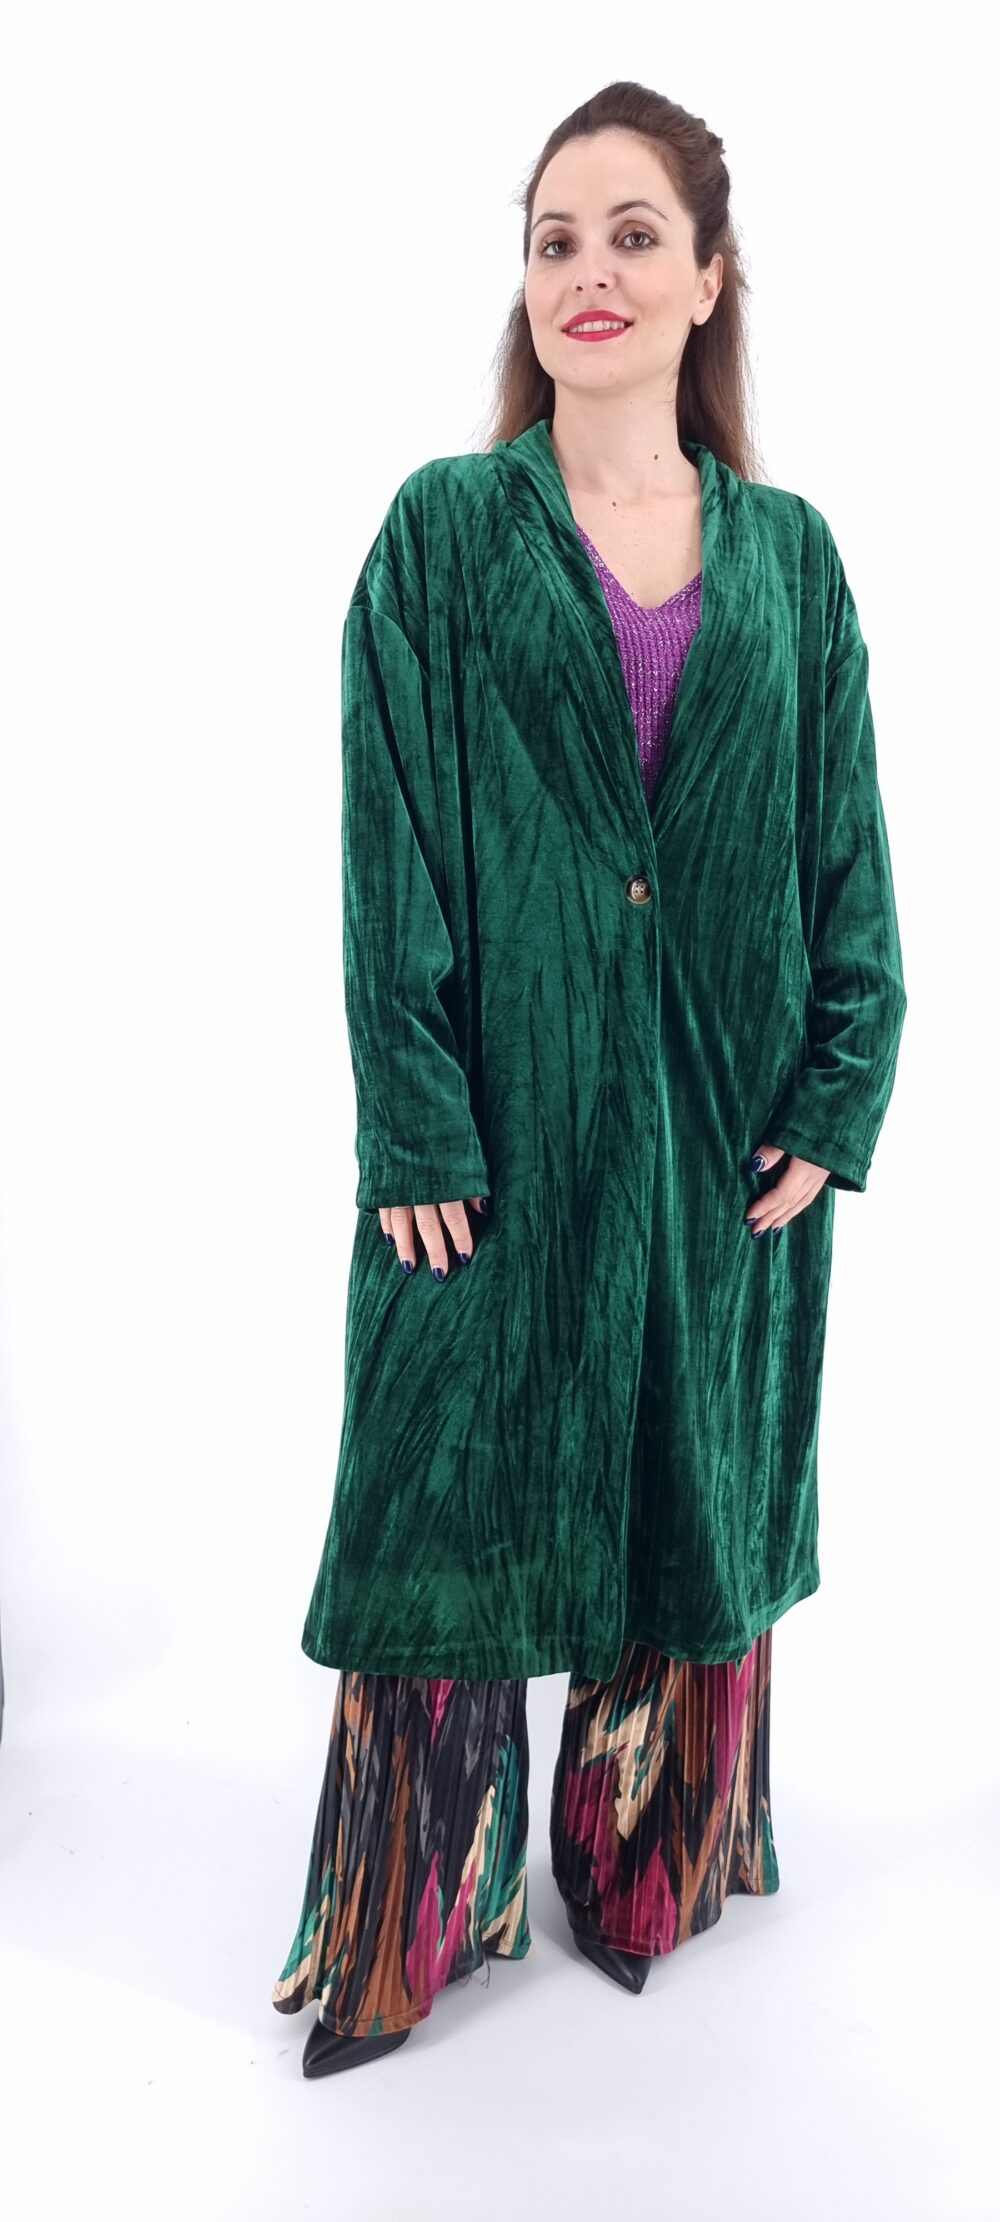 Βελουτέ παλτό με κουμπί και εσωτερικό animal print μοτίβο πράσινο